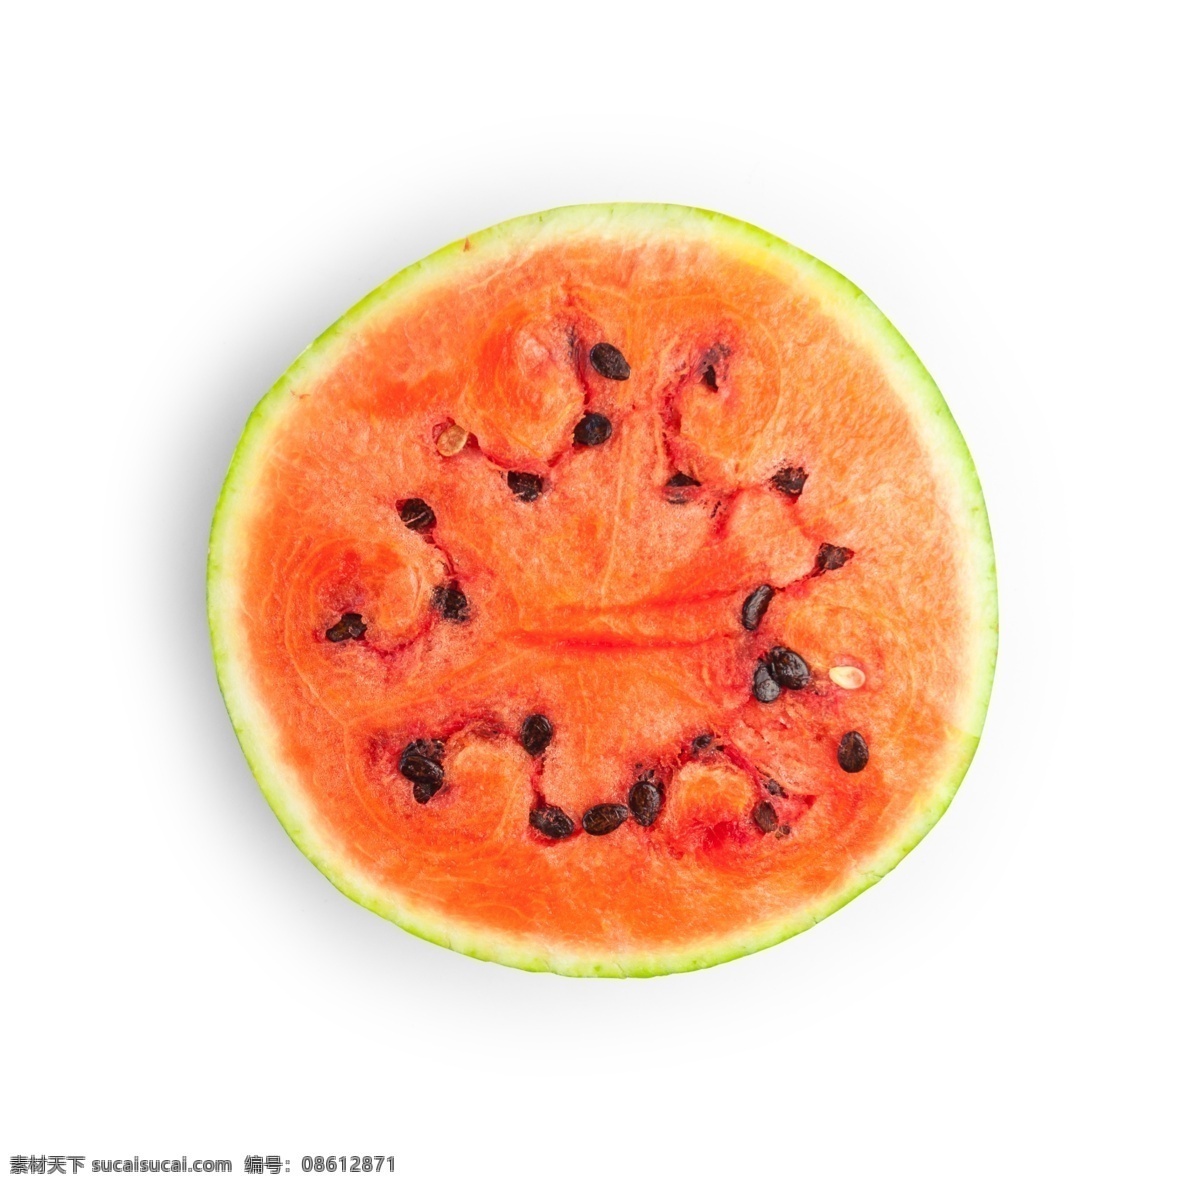 夏日 新鲜 汁 半边 西瓜 源文件 橙红色 黑色 果肉 西瓜核 装饰图案